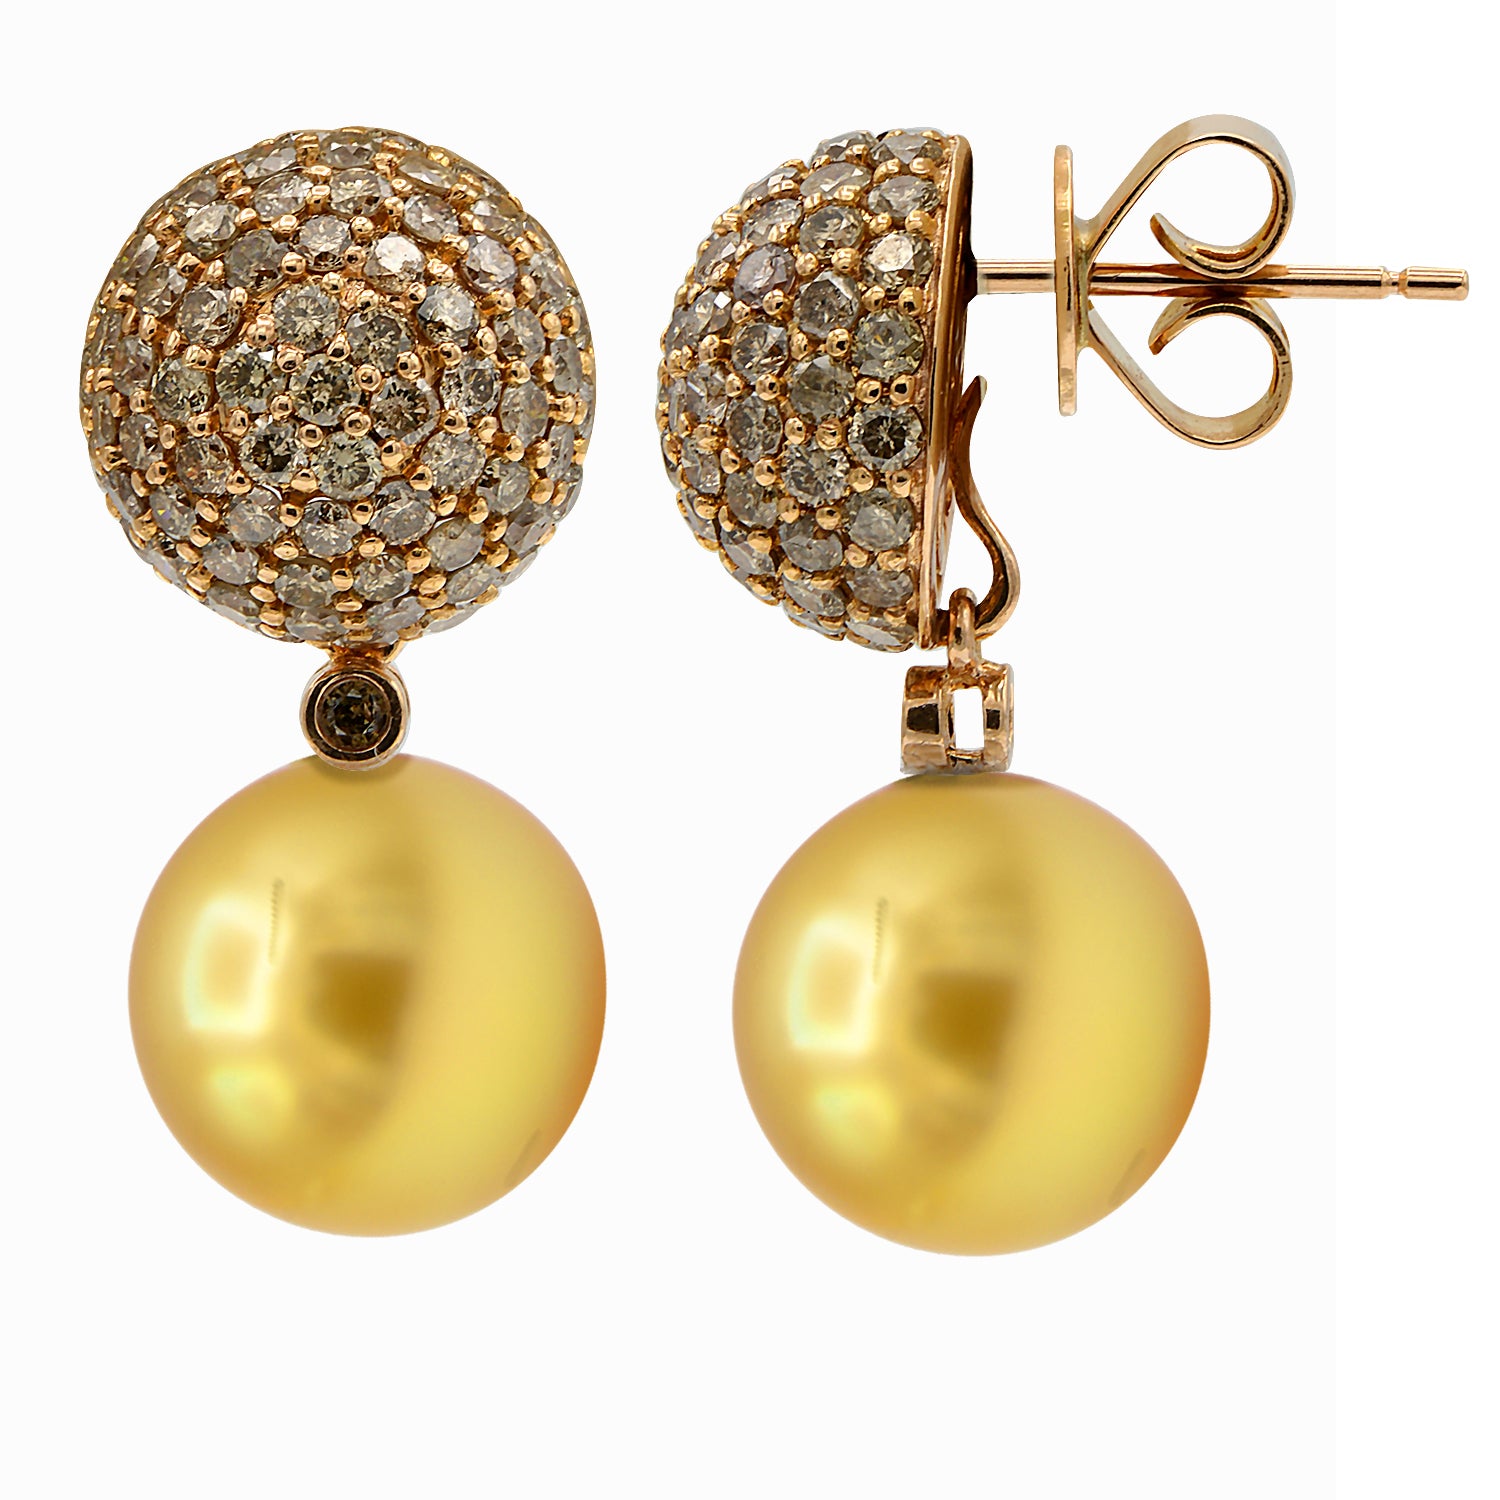 18KR Golden South Sea Pearl Earrings, 11-12mm